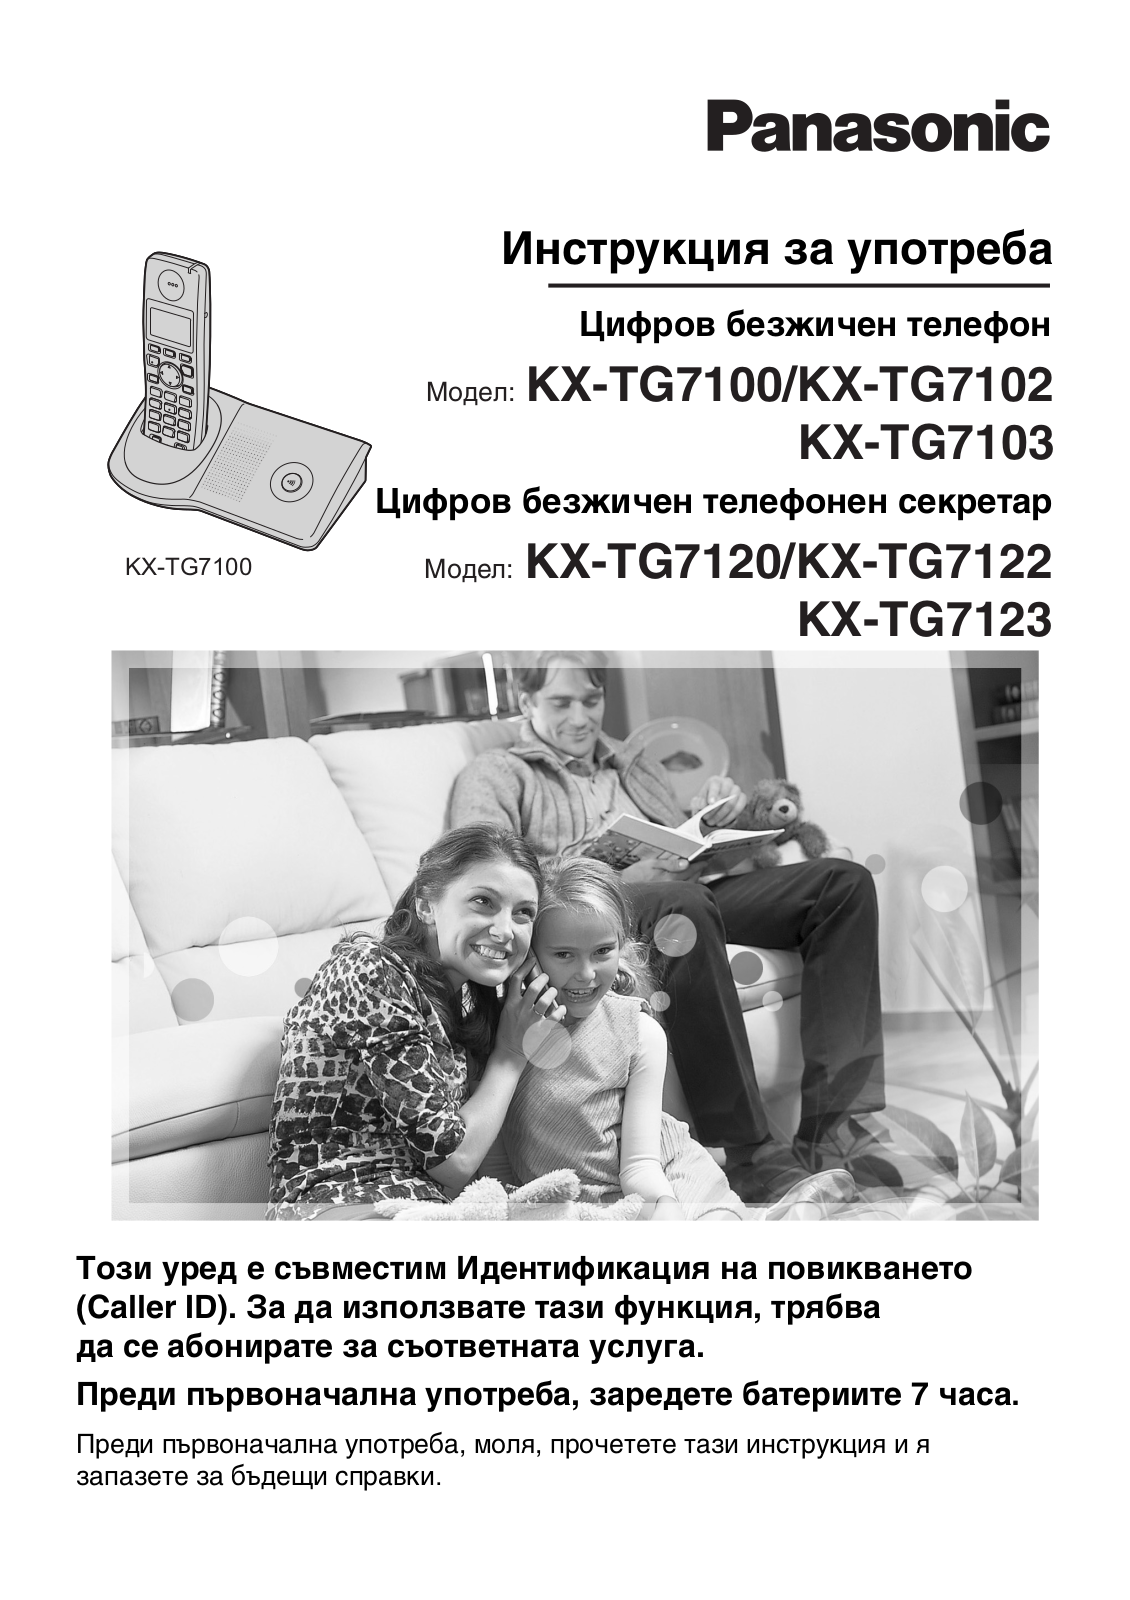 Panasonic KX-TG7123, KX-TG7103, KX-TG7122, KX-TG7120, KX-TG7100 User Manual